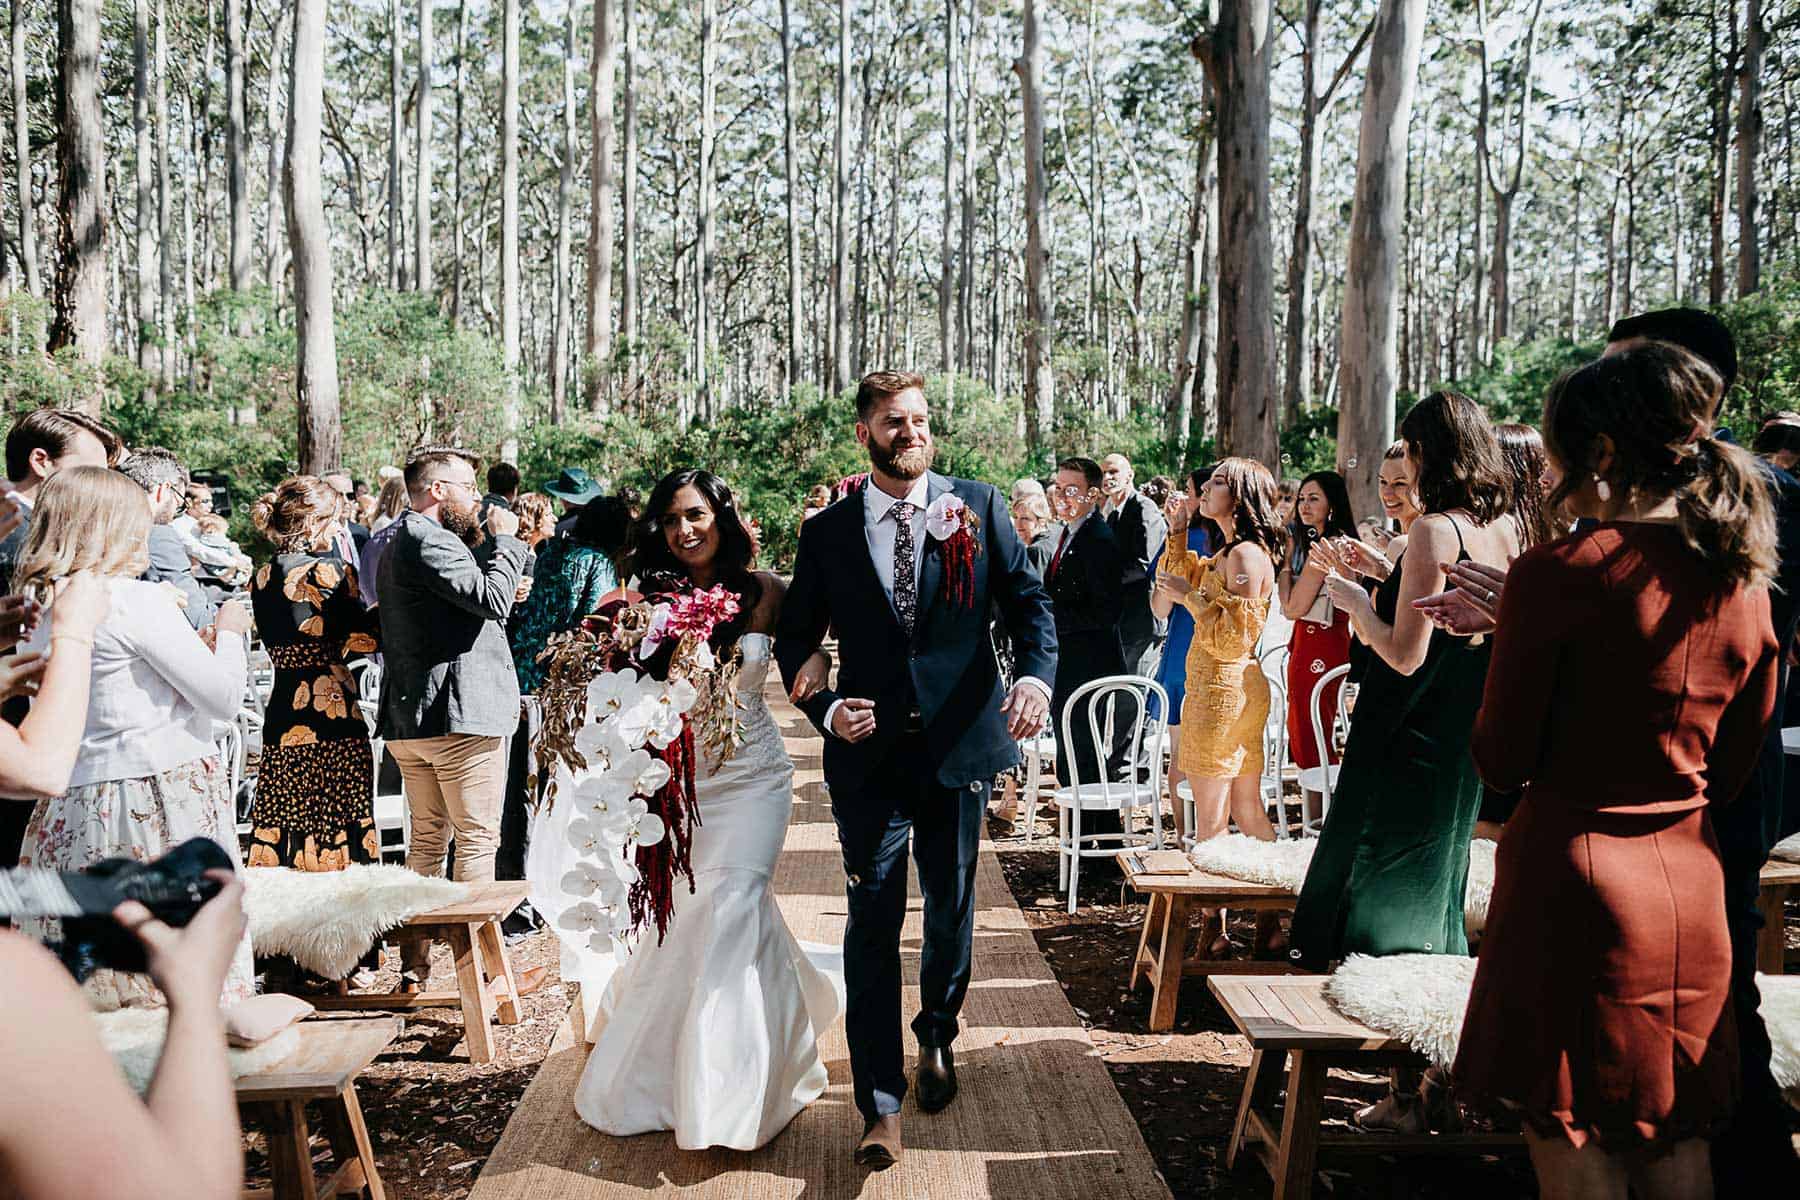 vibrant, bloom-filled Margaret River wedding